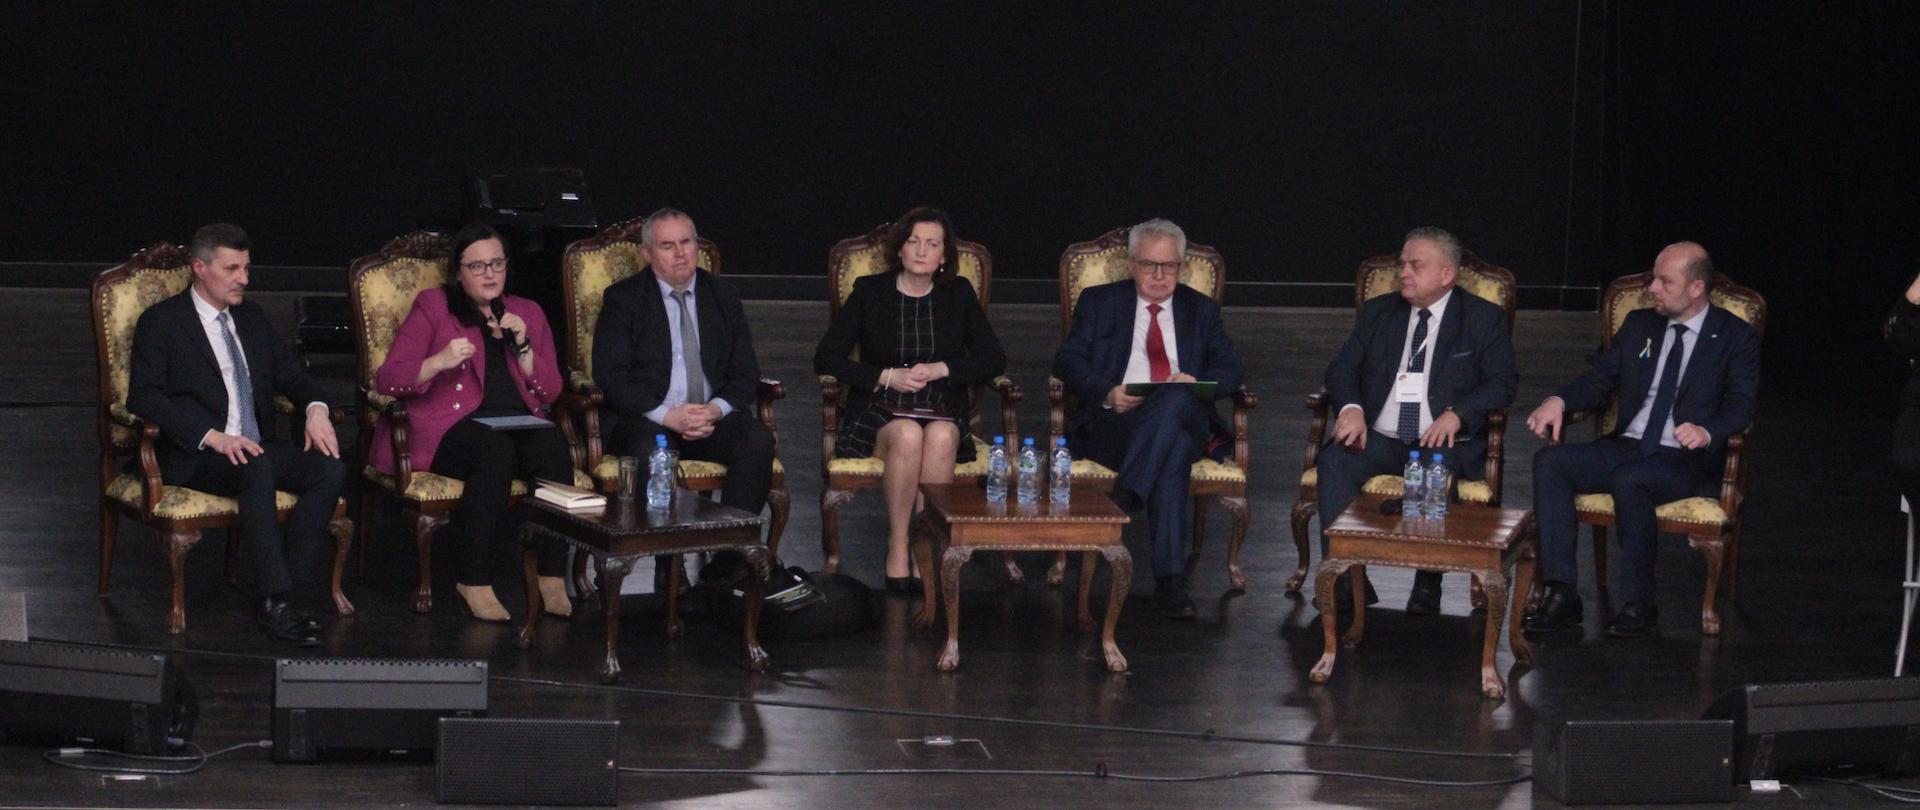 Siedem osób siedzi na fotelach na scenie. Druga od lewej siedzi wiceminister Małgorzata Jarosińska-Jedynak i w lewej dłoni trzyma mikrofon.